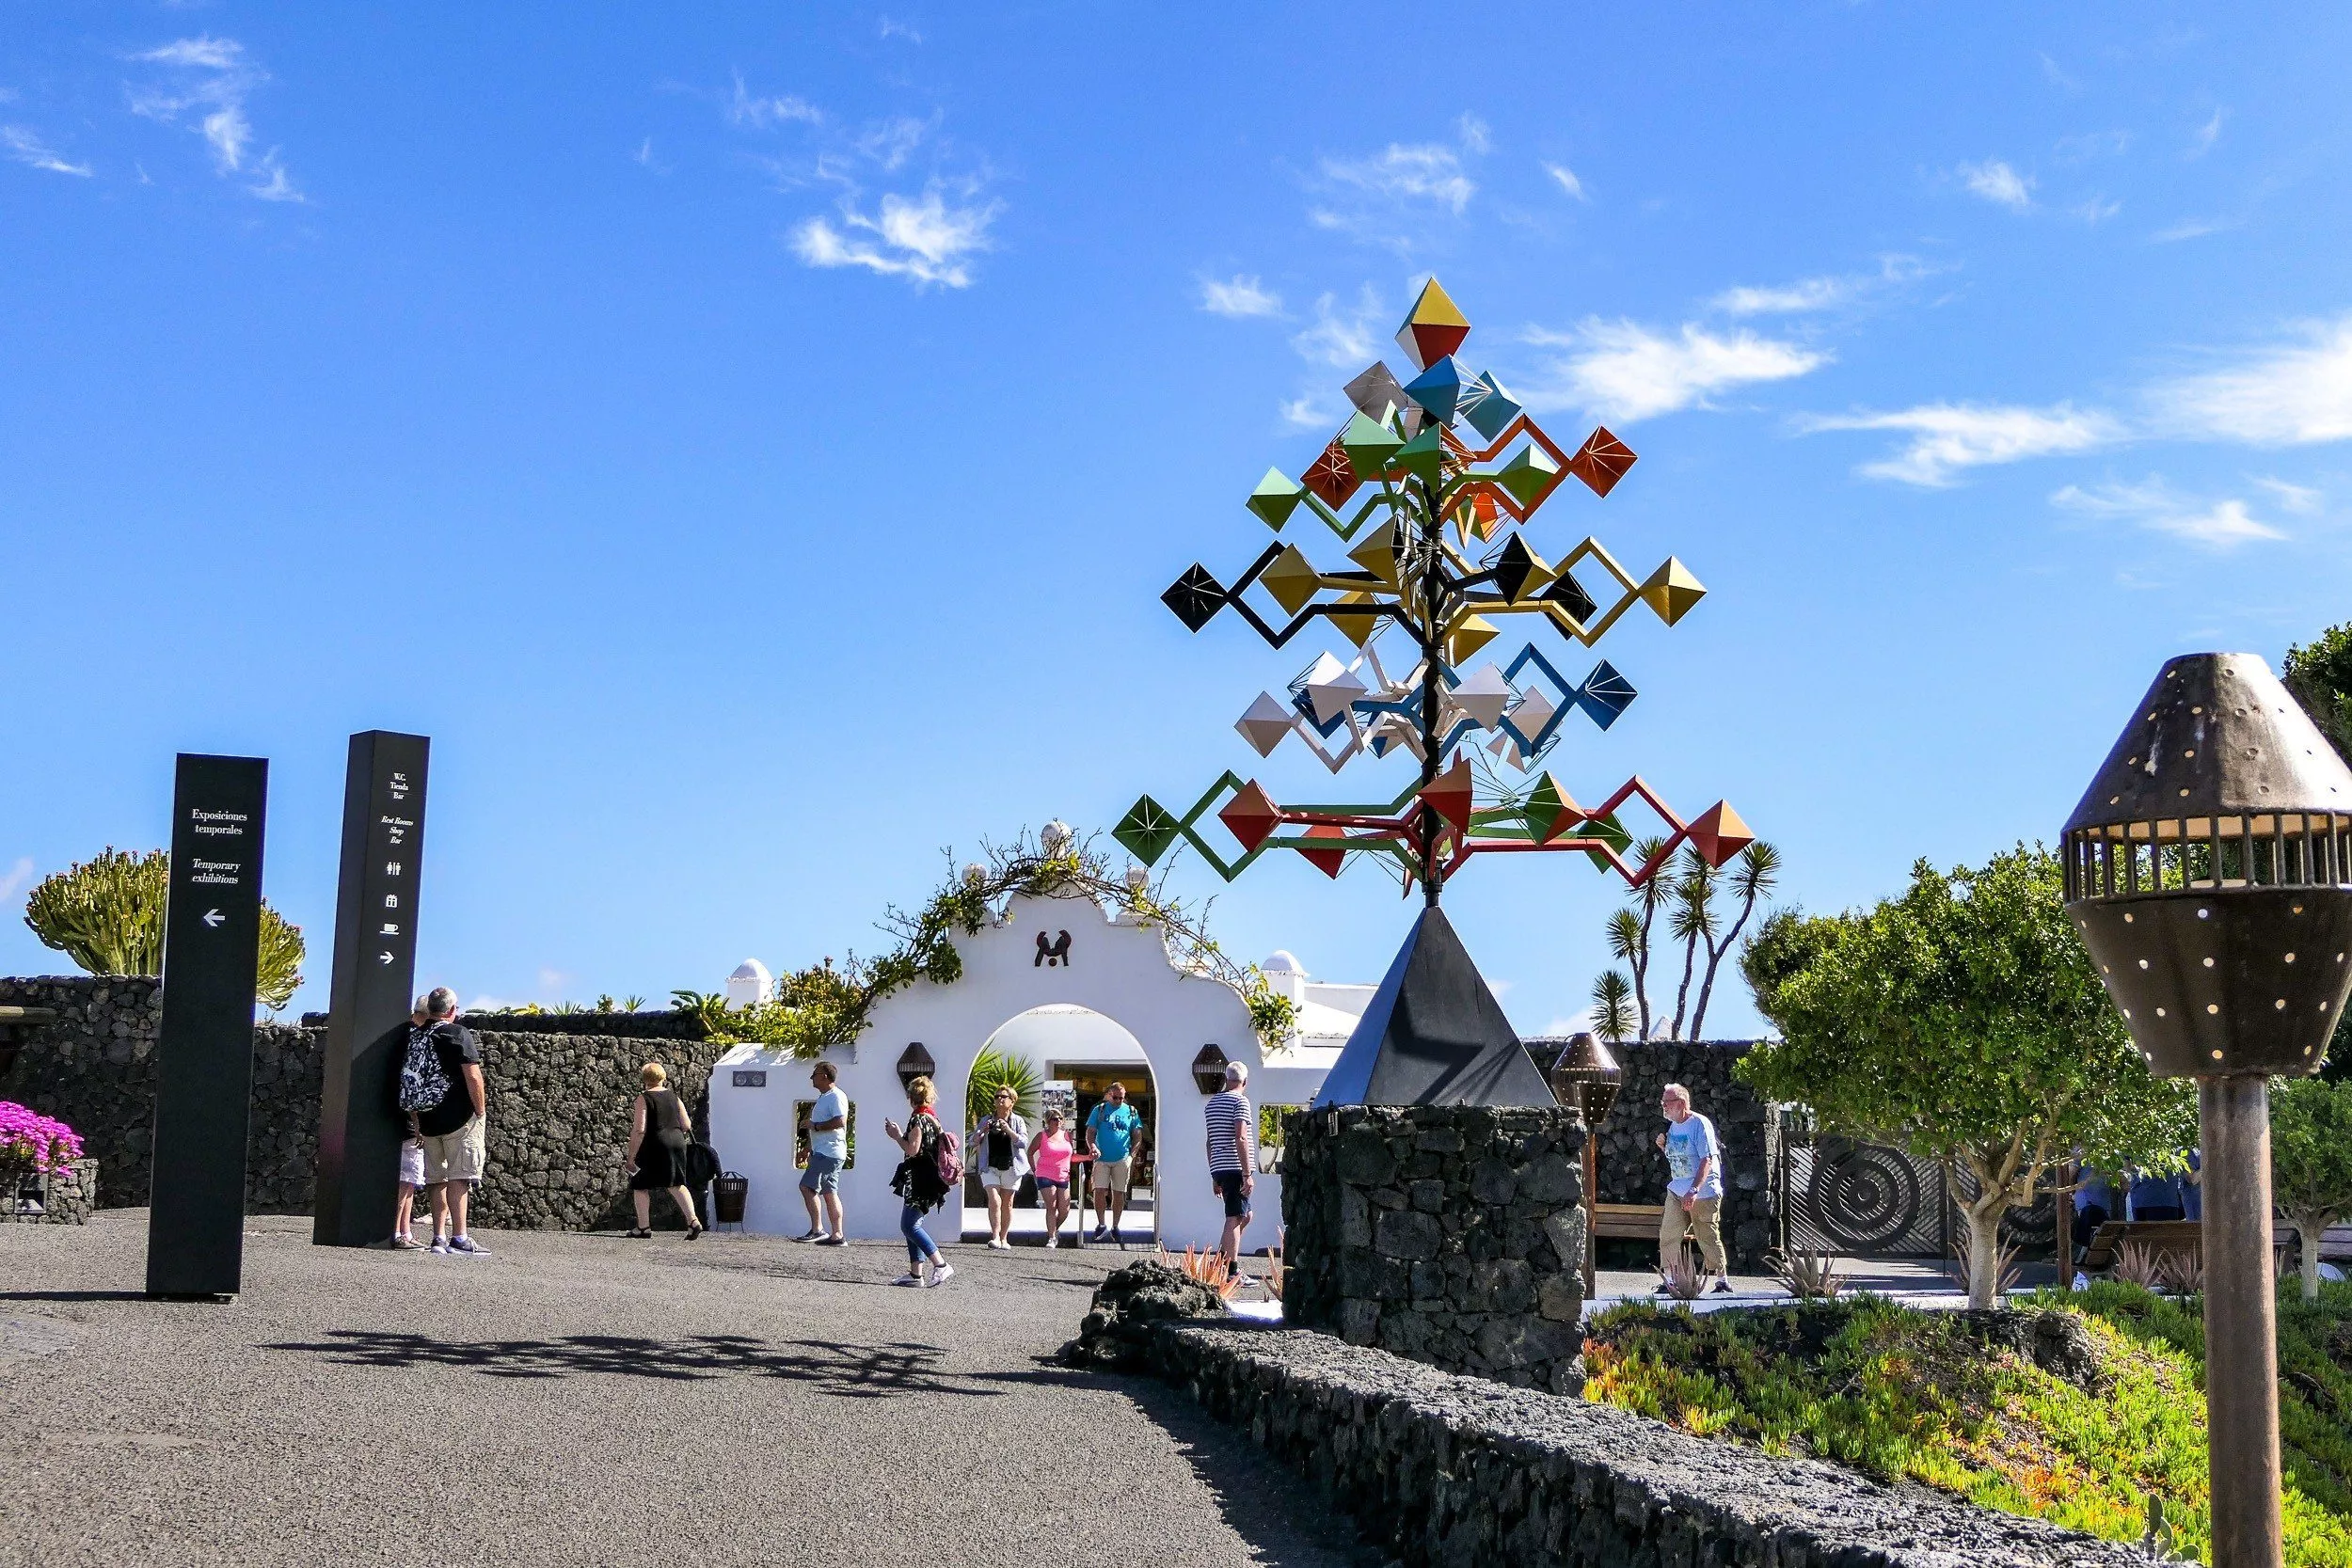 Kunst, Vulkangestein und ein Tor im traditionellen Stil Lanzarotes – der Eingang zur Stiftung Cesar Manrique ist ein Vorgeschmack auf das ungewöhnliche Ensemble aus Natur und Architektur